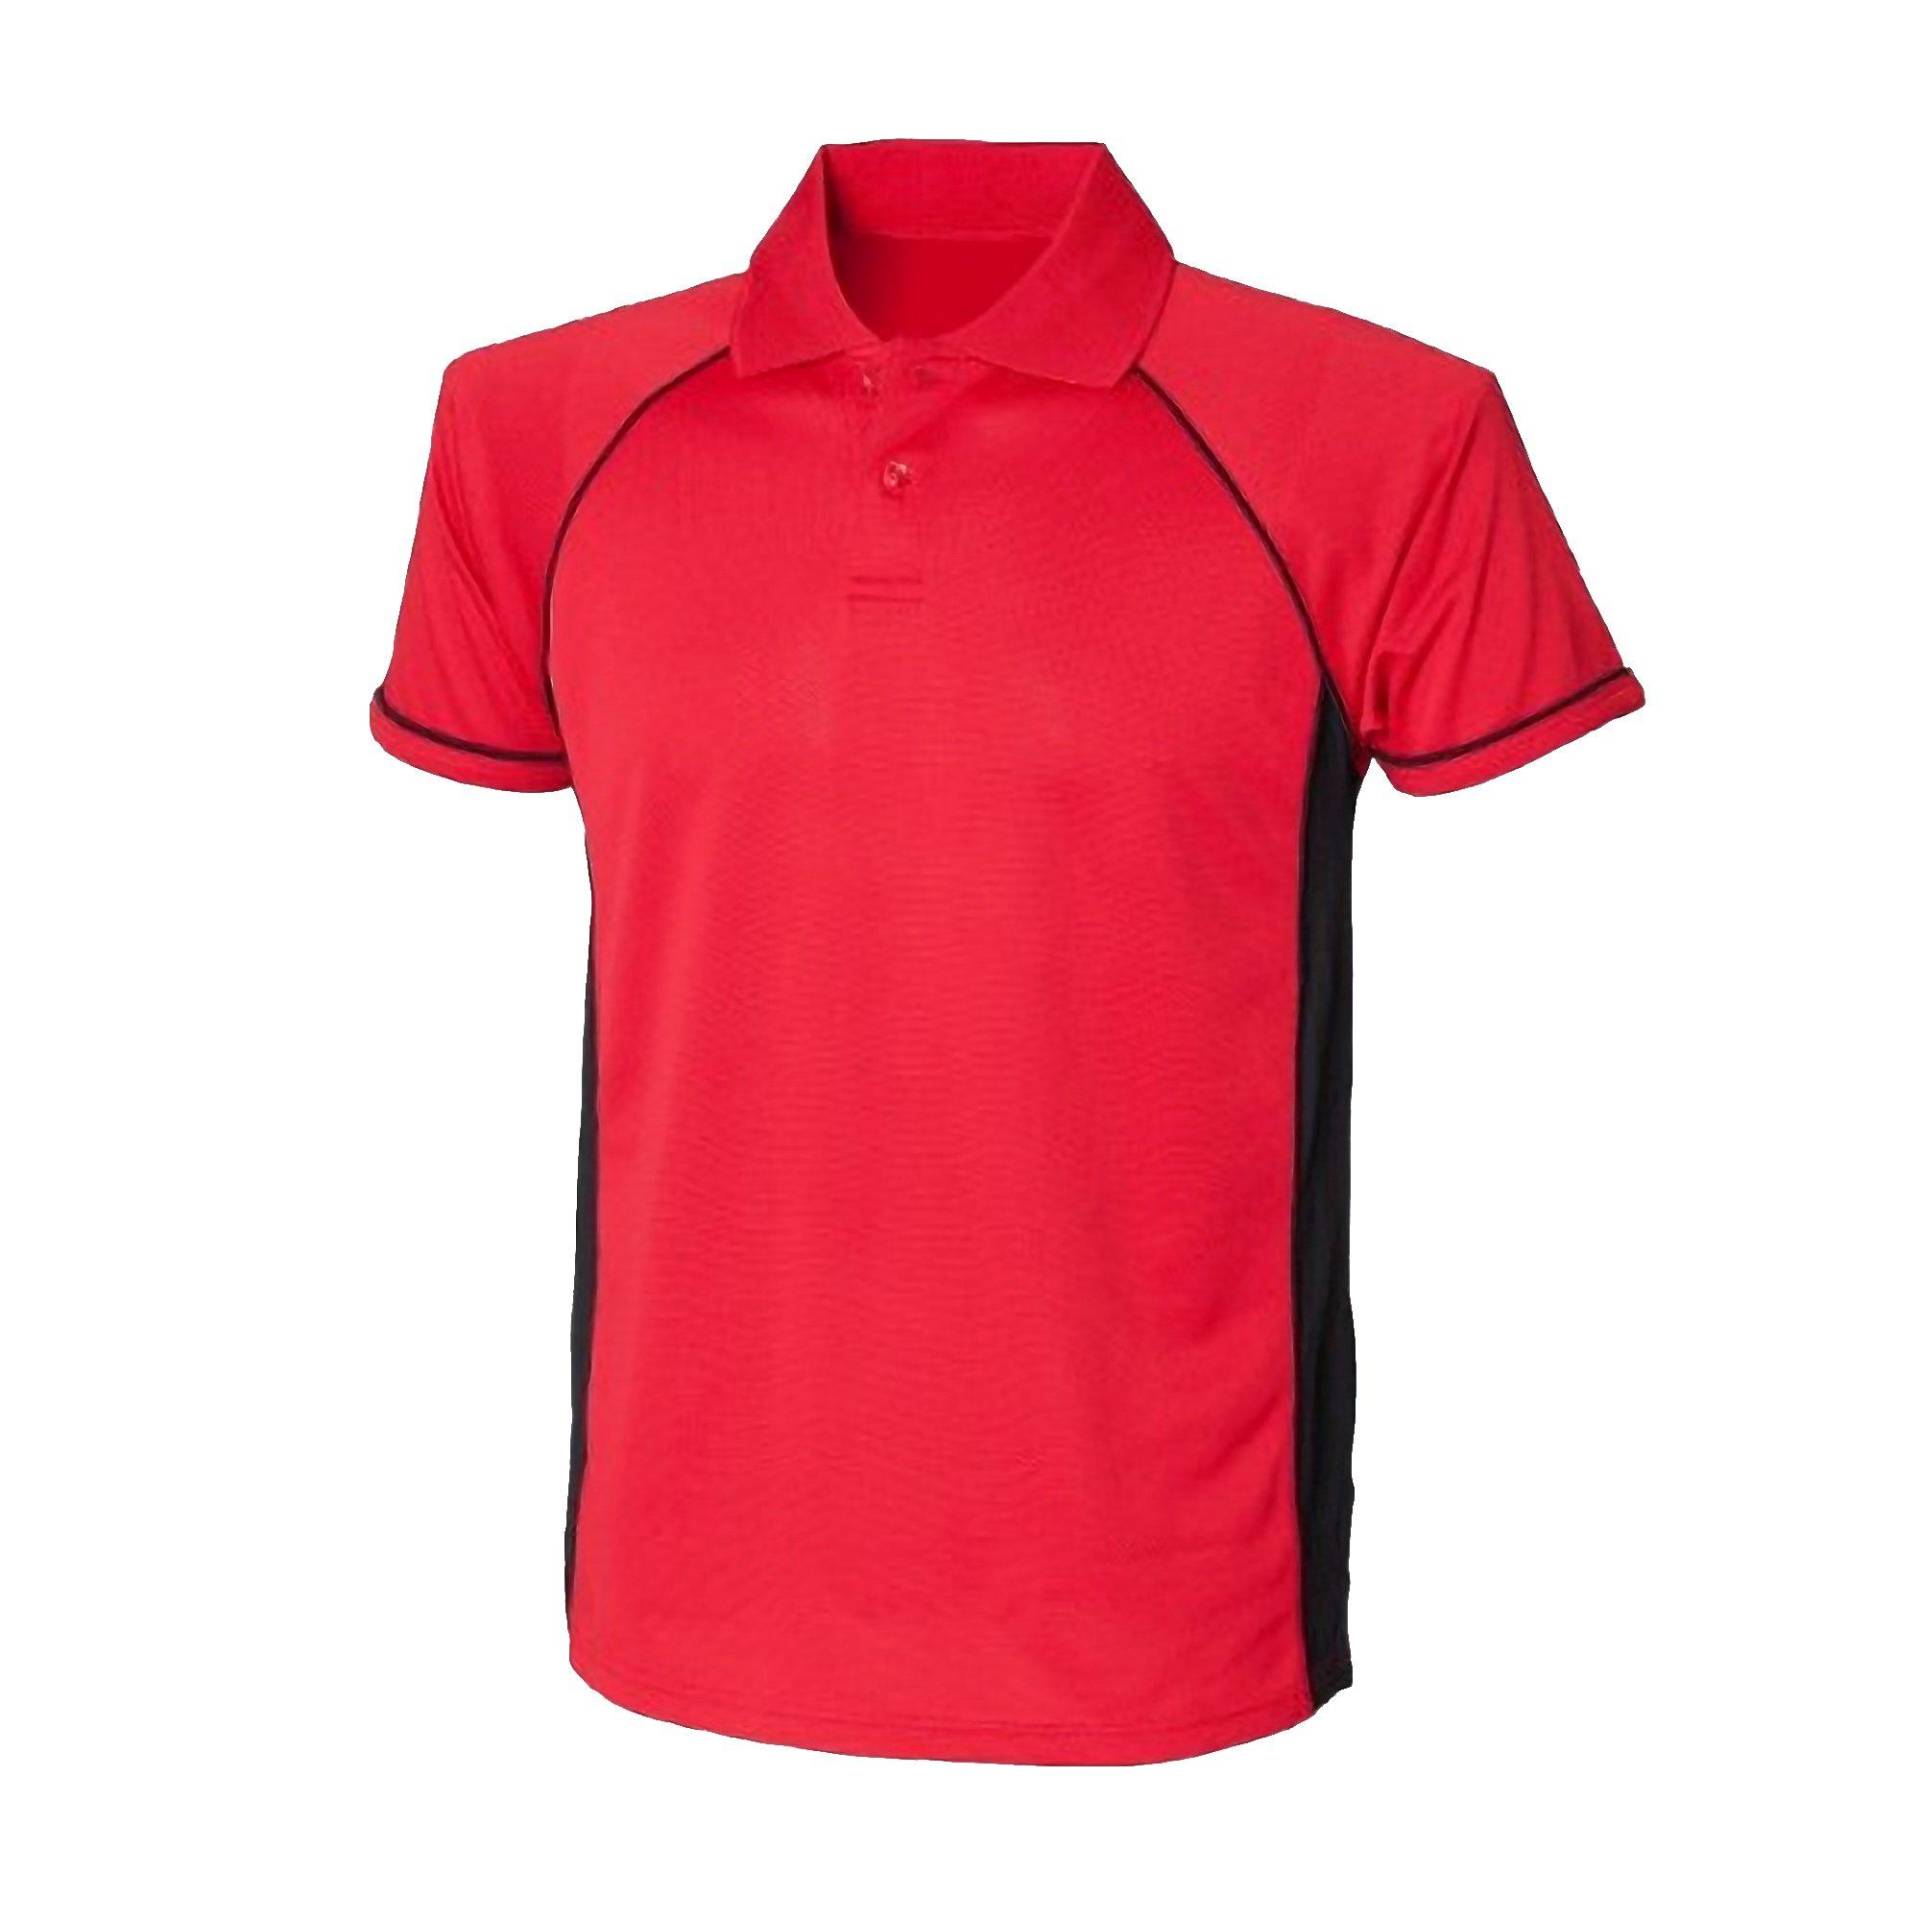 Sport Poloshirt Panel Performance Herren Rot Bunt XL von Finden & Hales